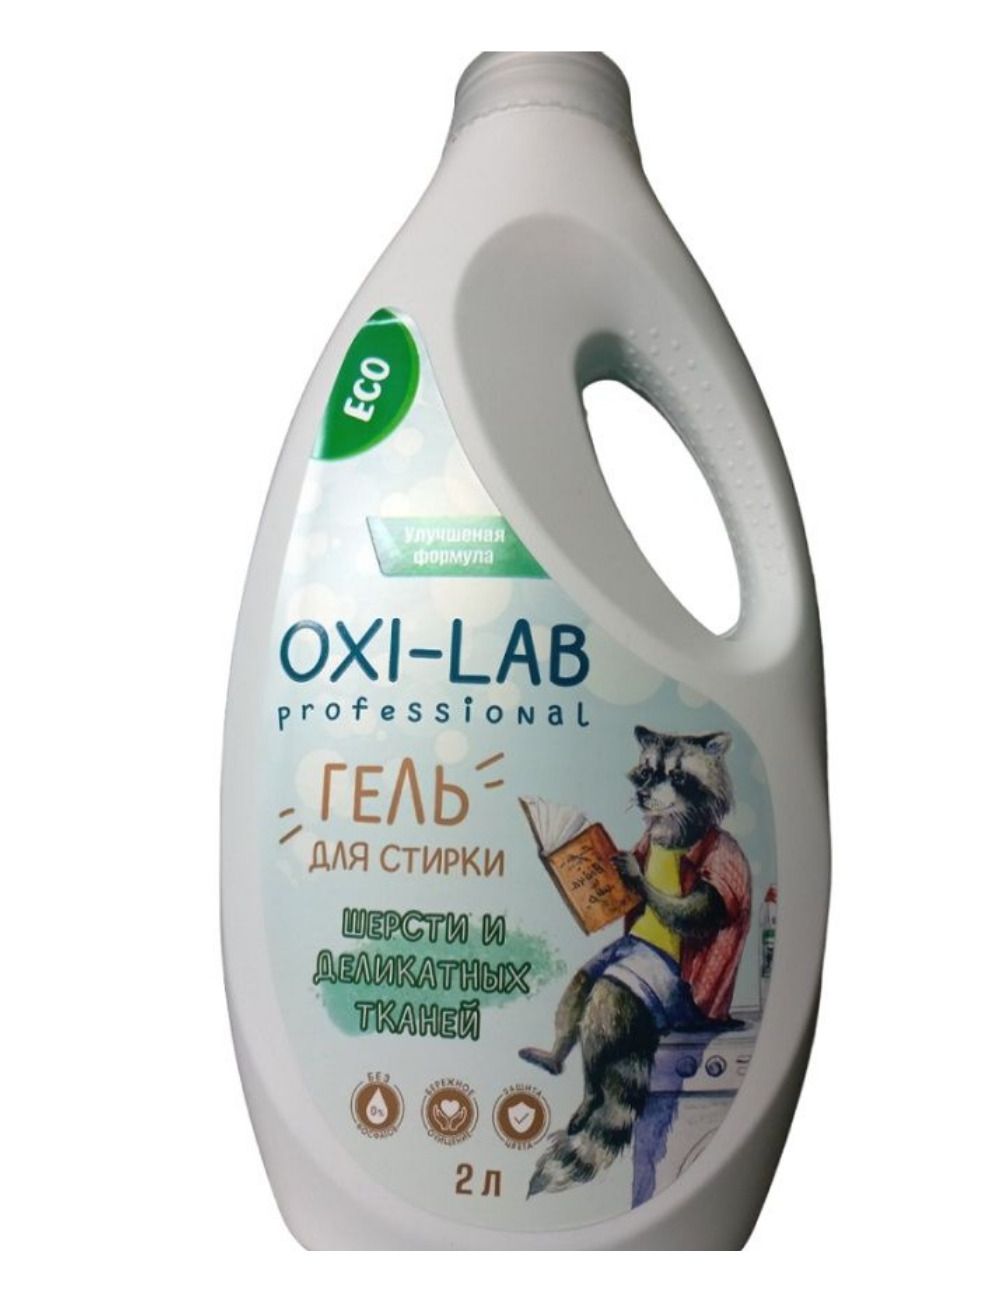 Oxi Lab гель для стирки. Гель для стирки Oxi-Lab 5 l. Гель для стирки Oxi Universal 1500. Oxi Lab professional гель для мытья. Gel laboratory